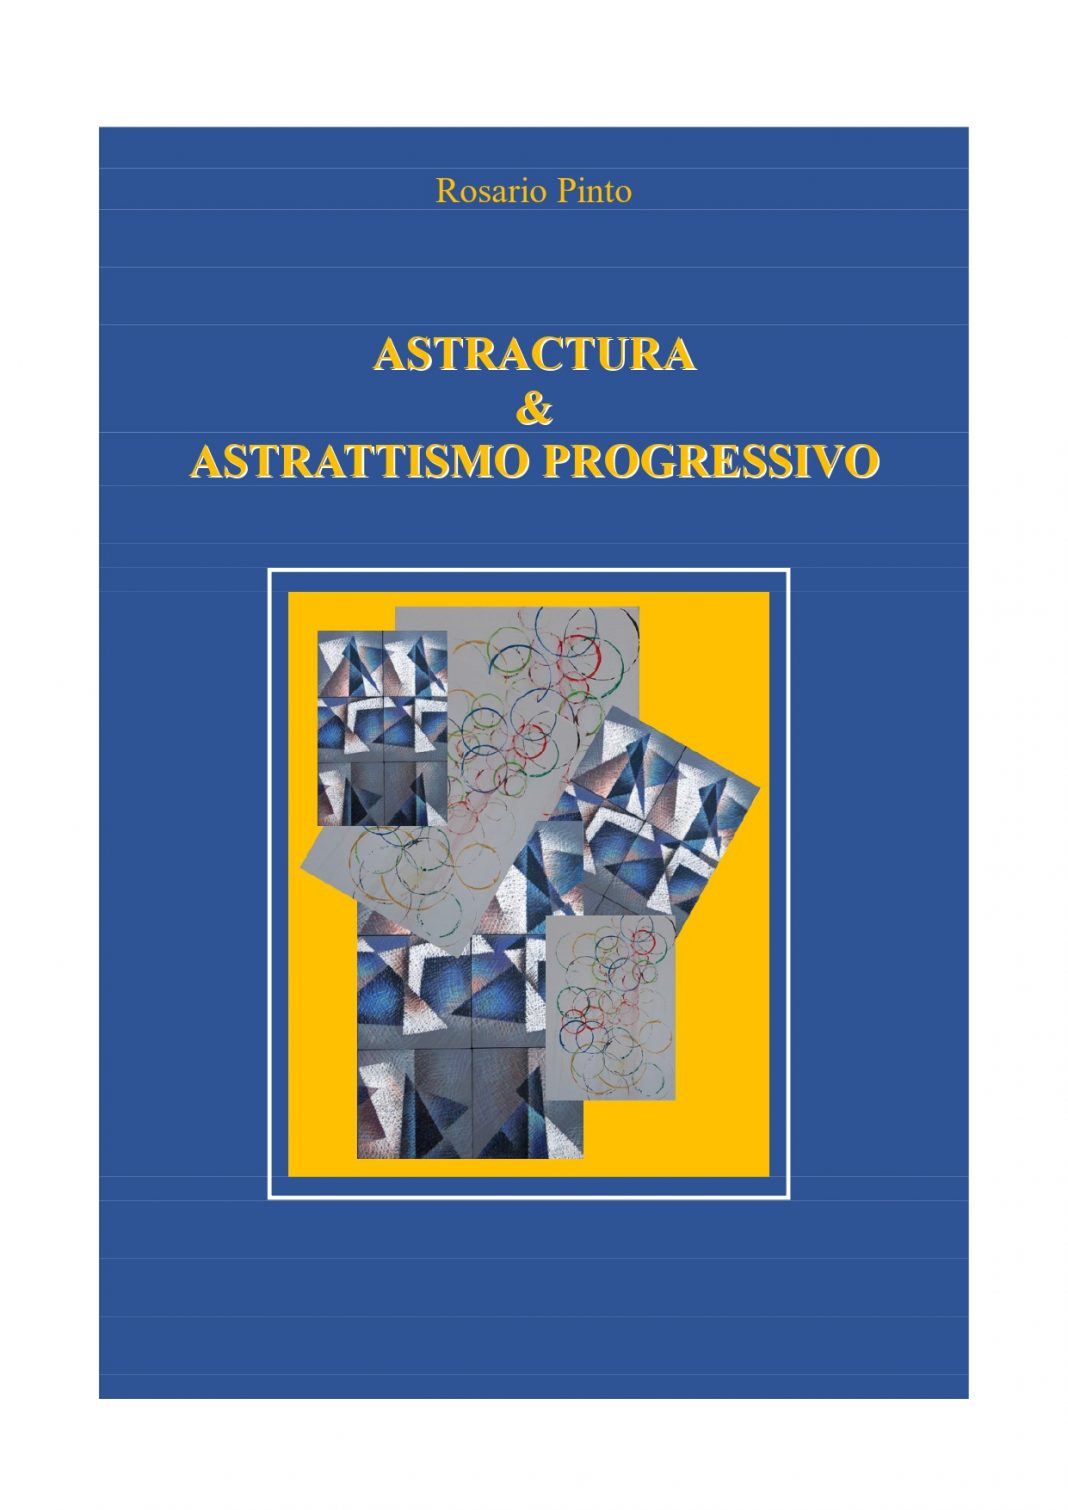 Astractura & Astrattismo progressivohttps://www.exibart.com/repository/media/formidable/11/img/cea/copertina-facciata-catalogo-in-mostra-1068x1510.jpg